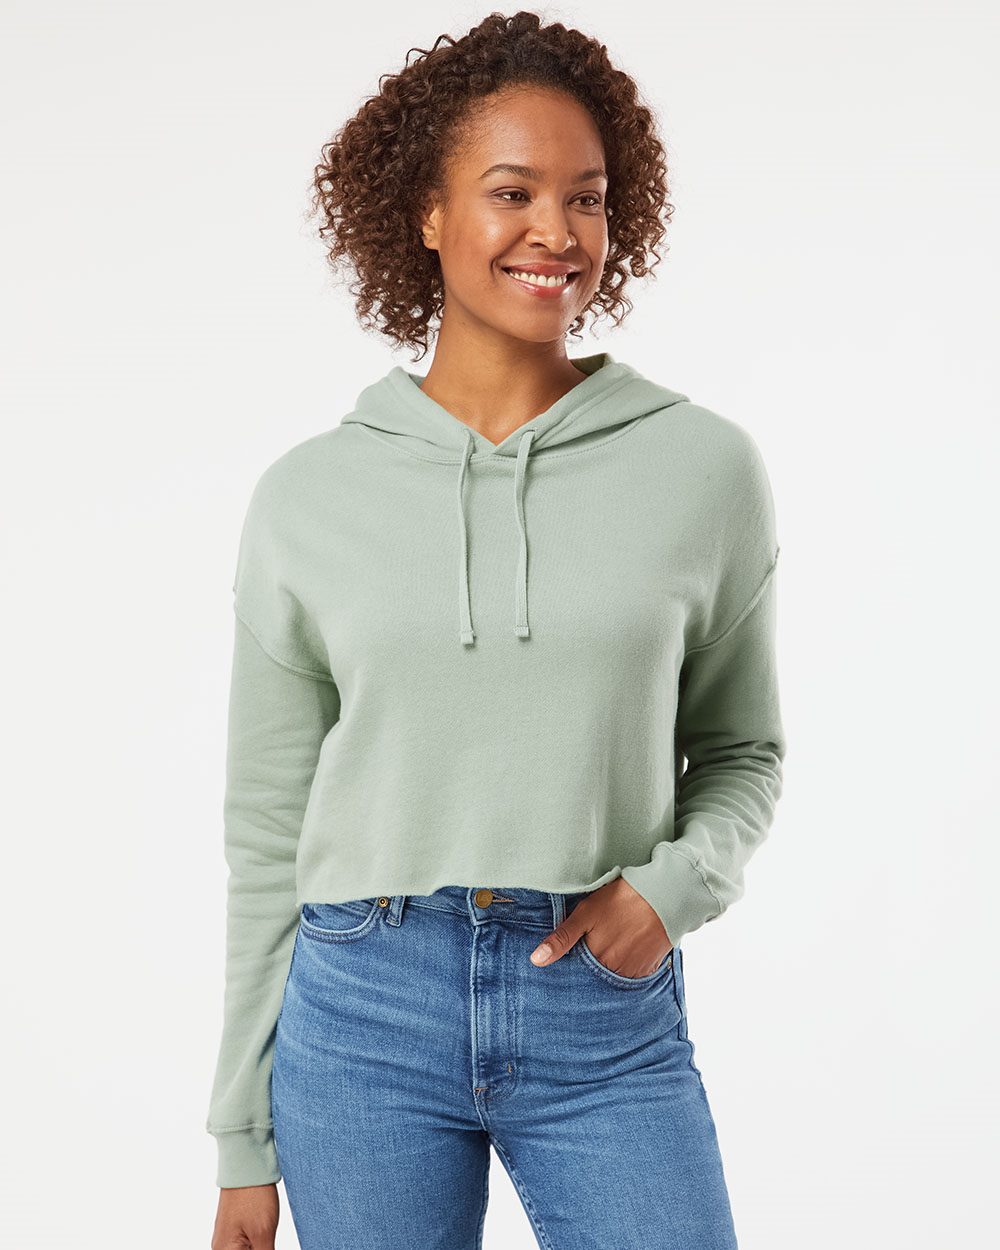 Crop Sweatshirts, Crop Tops for Women